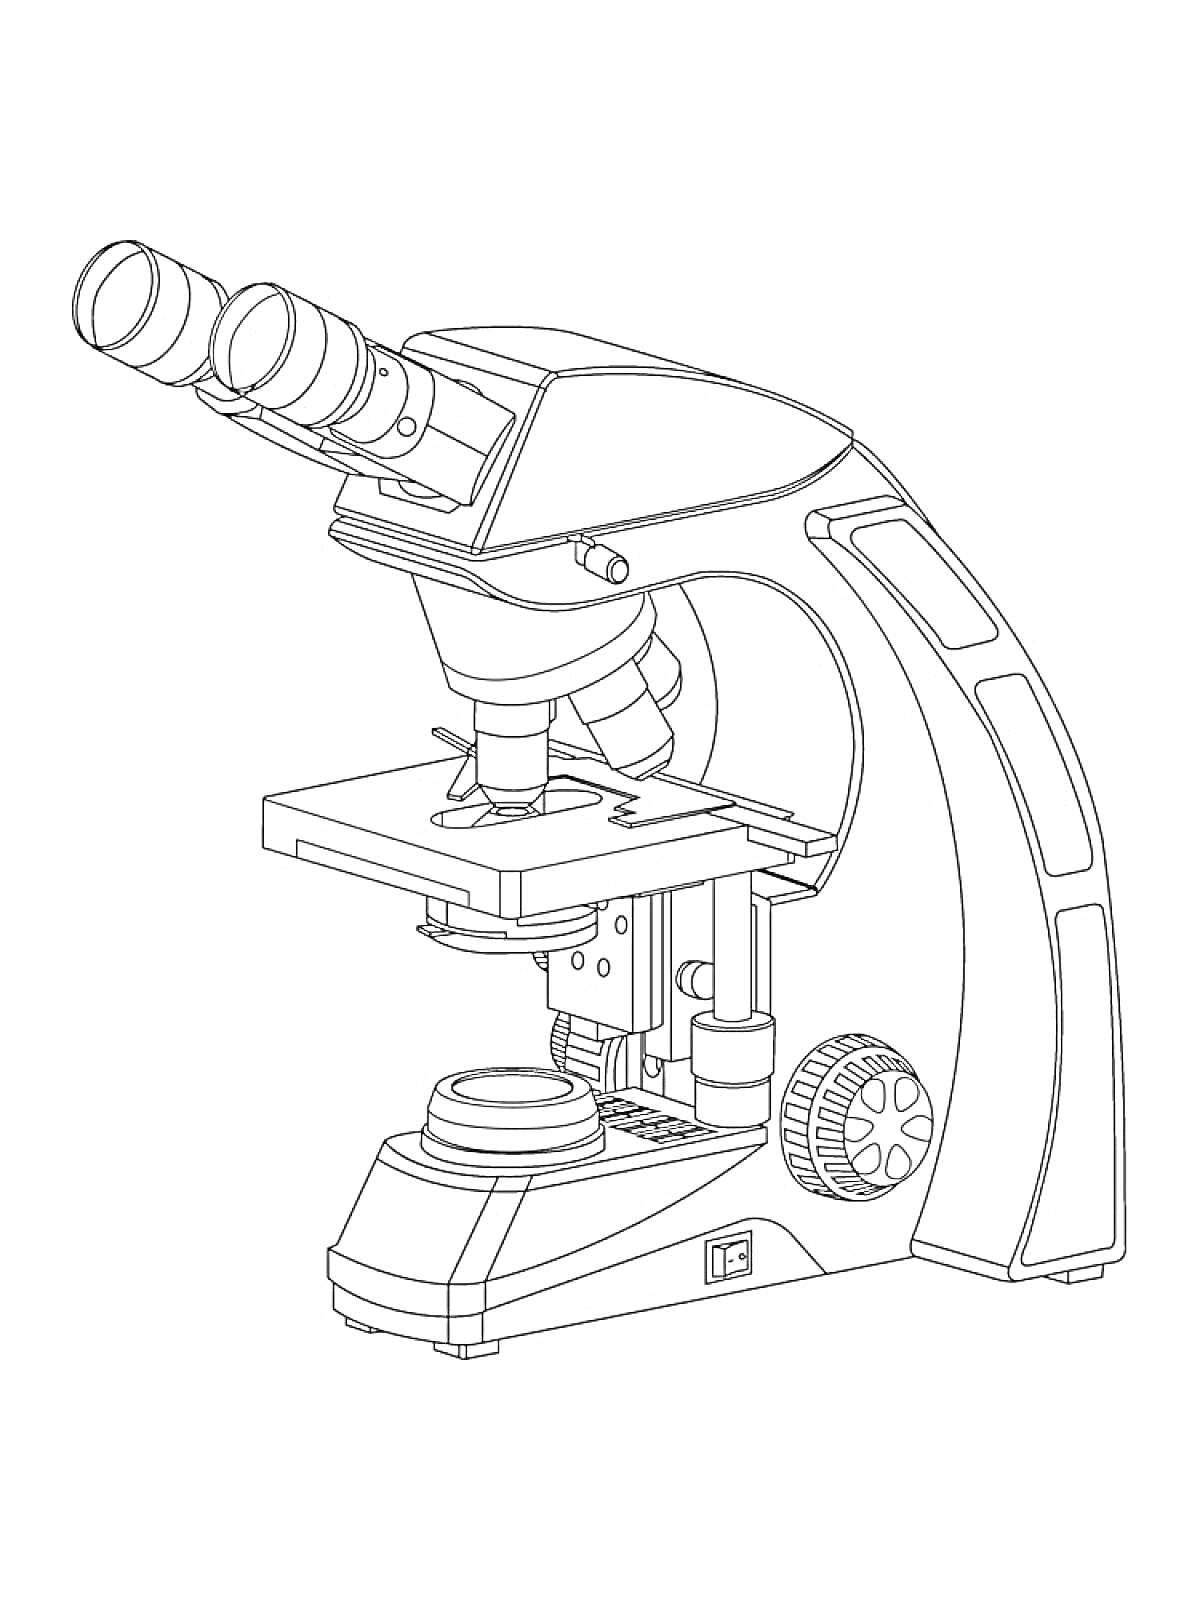 Раскраска Микроскоп с окулярами, предметным столиком, объективами и фокусировочным колесом